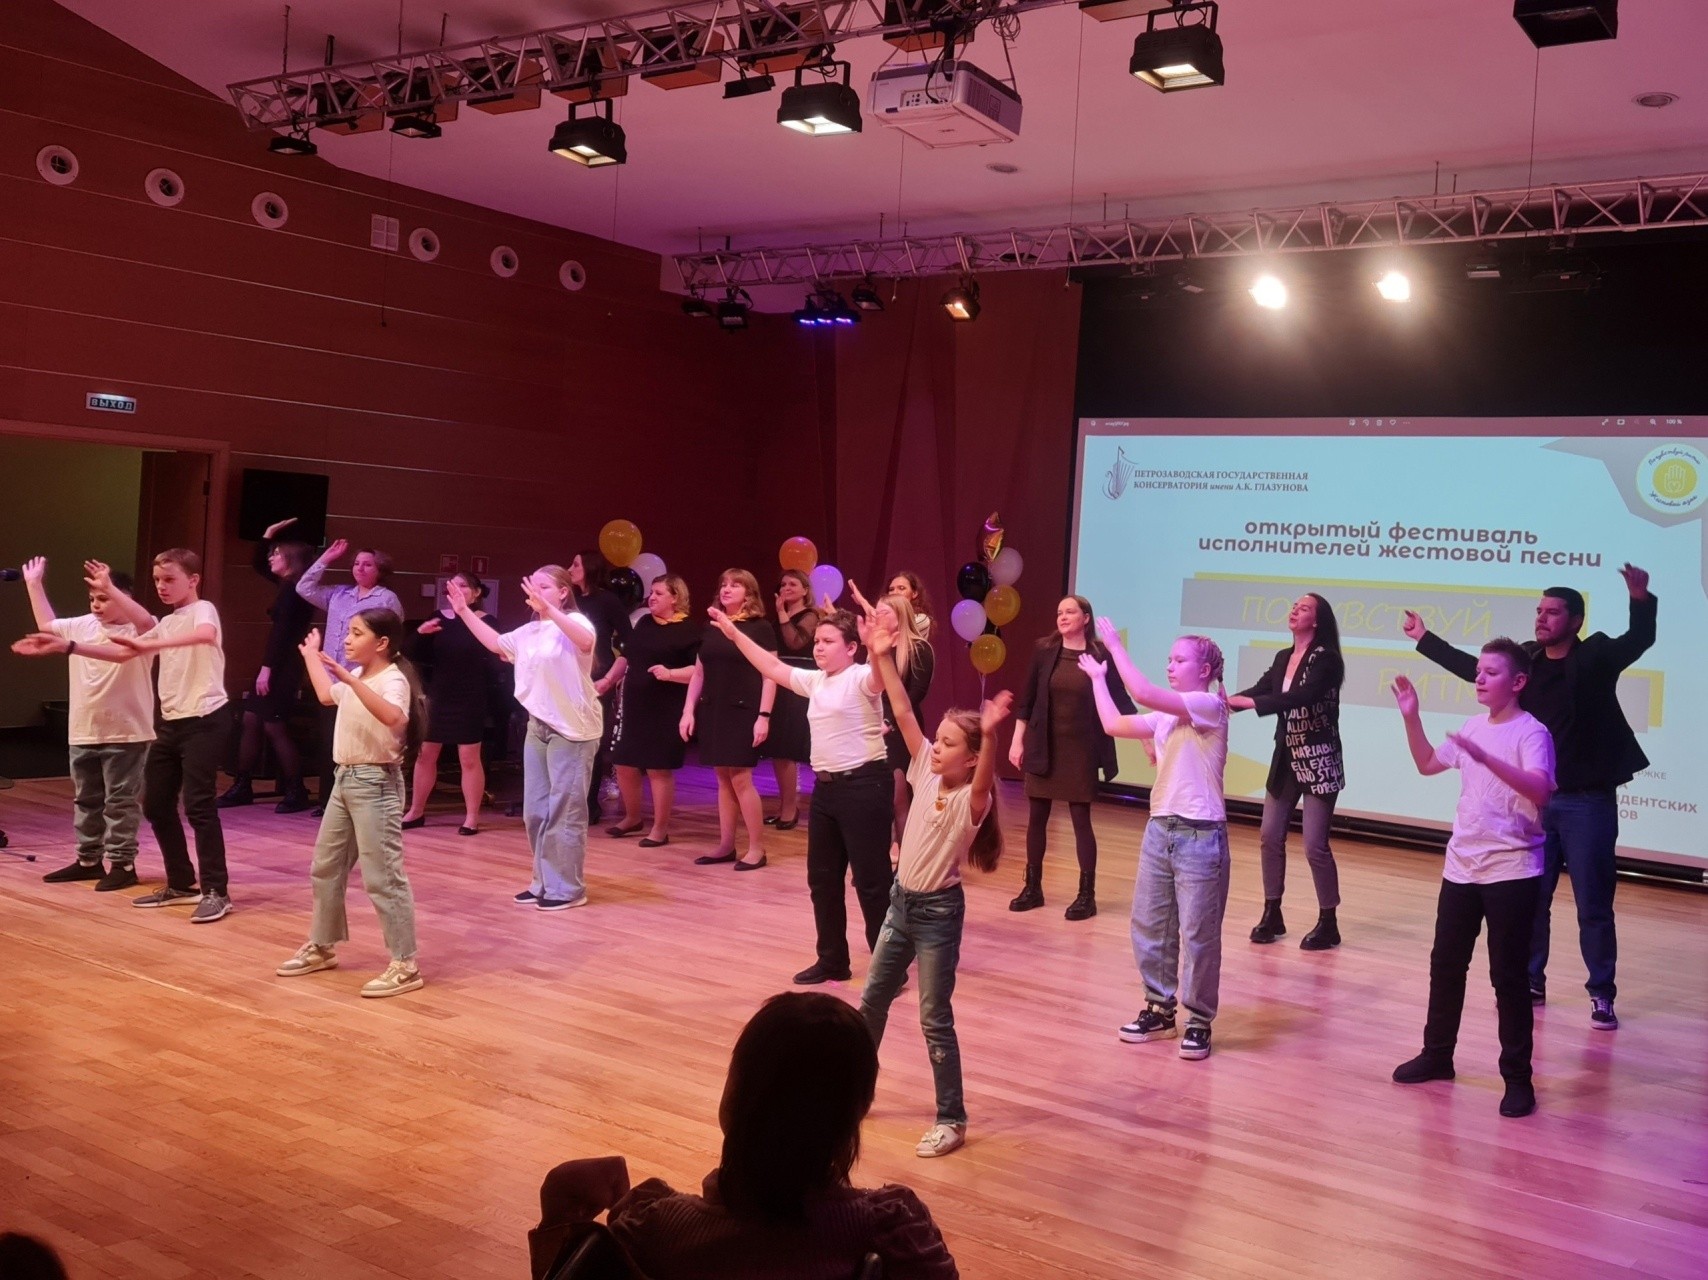 Petroskoin koulussa numero 25 opiskelevat kuulovammaiset lapset ja viittomakielen kurssin osallistujat esittävät musiikkikappalettaan. Kuva: Petroskoin viittomakielen kurssin VKontakte-sivu